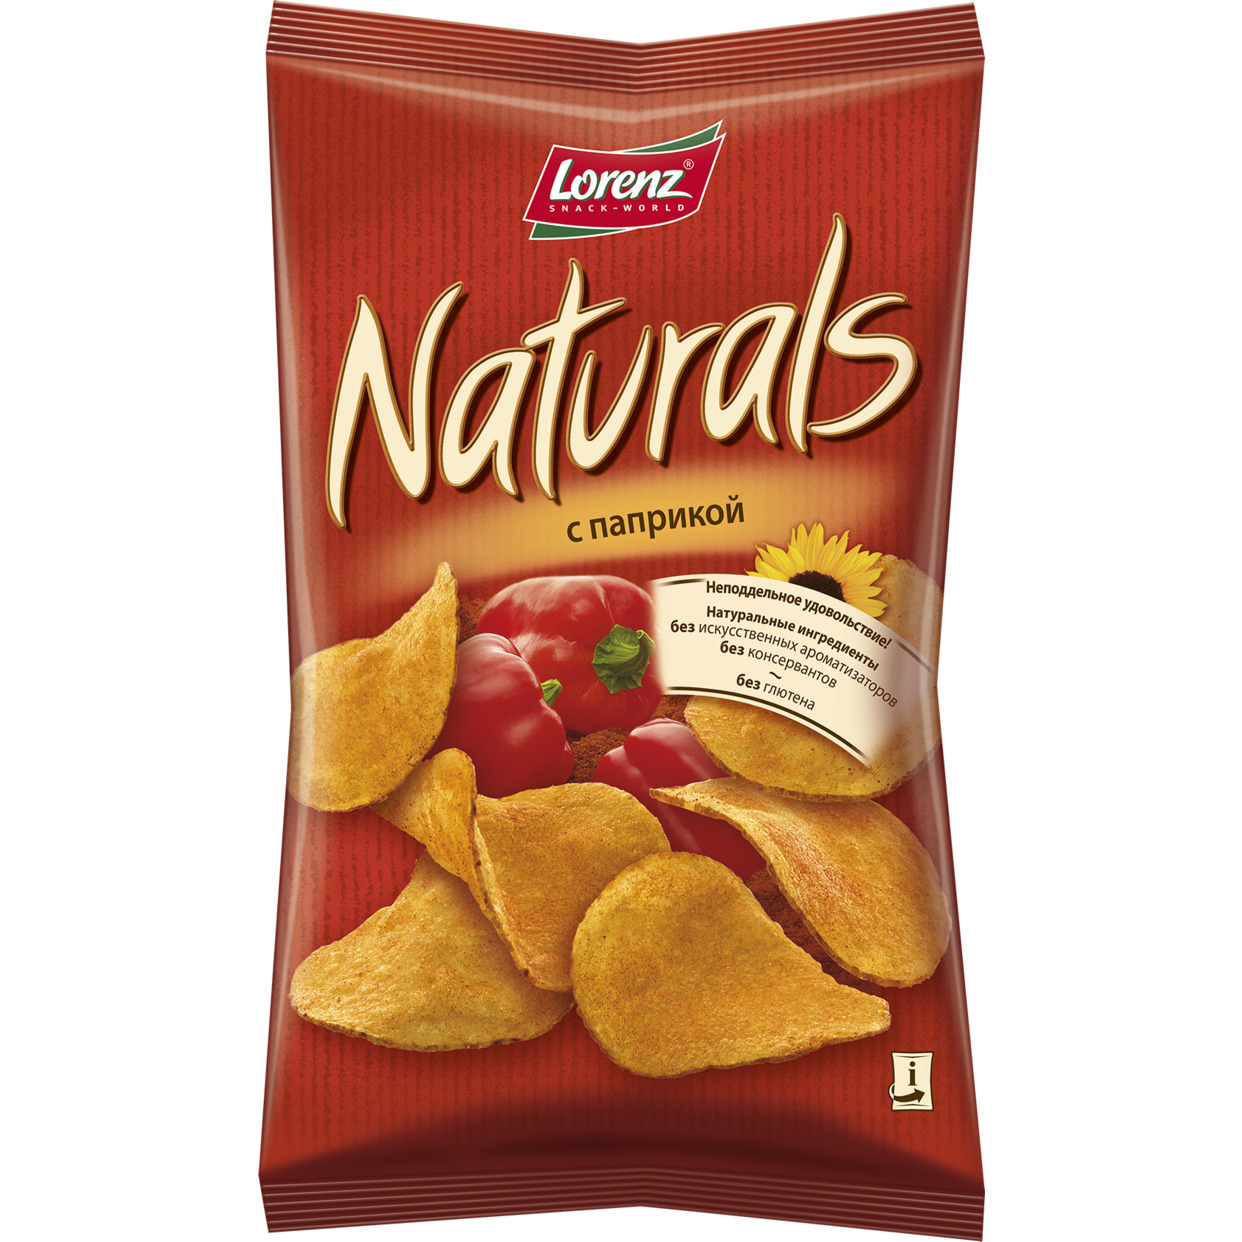 Картофельные чипсы “Naturals” с паприкой, 100 гр.